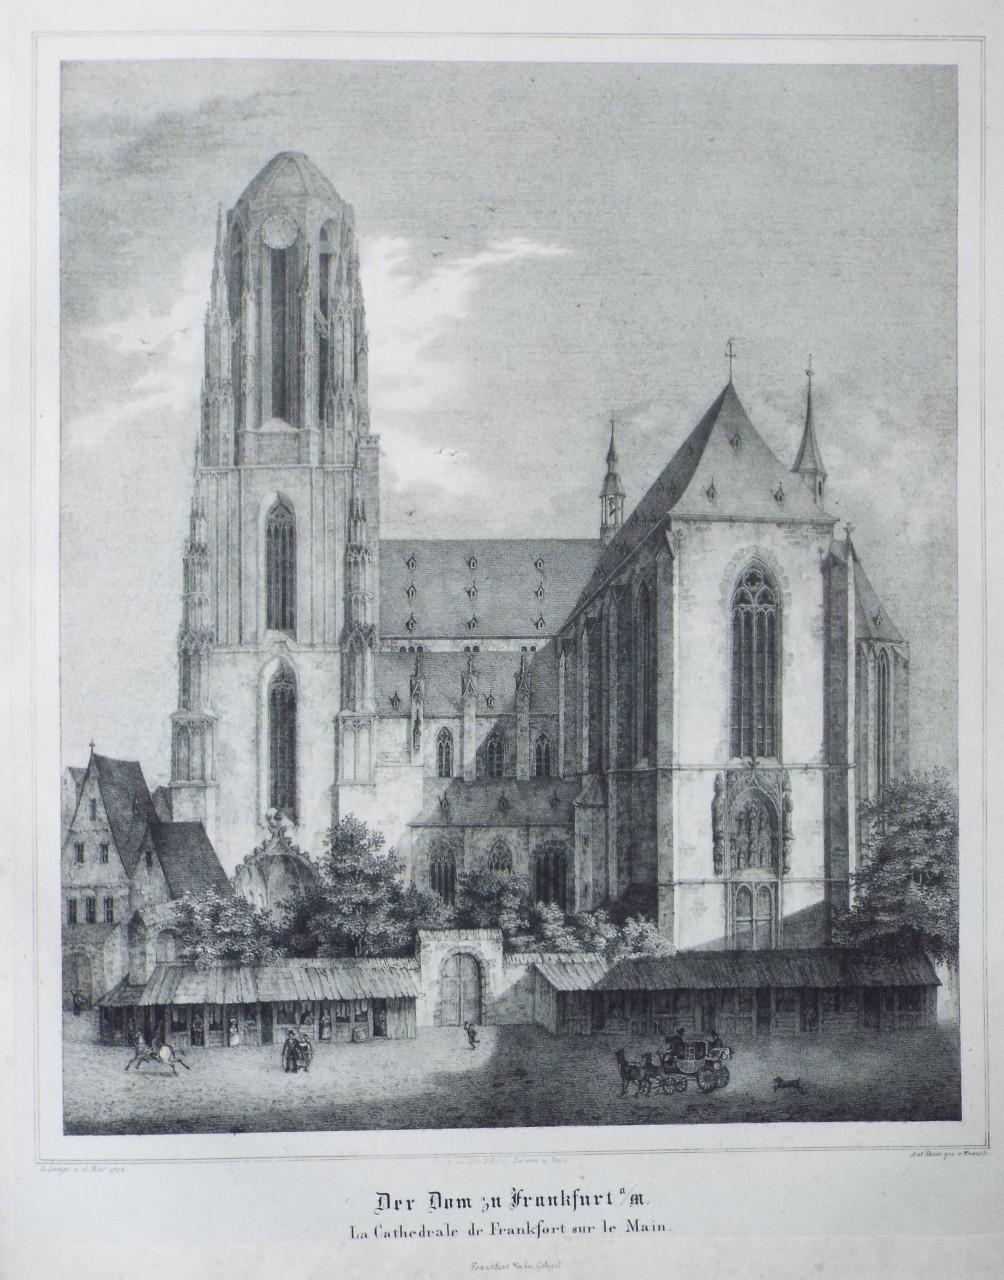 Lithograph - Der Dum in Frankfurt a/M.
La Cathedrale de Frankfort sur le Main. - 